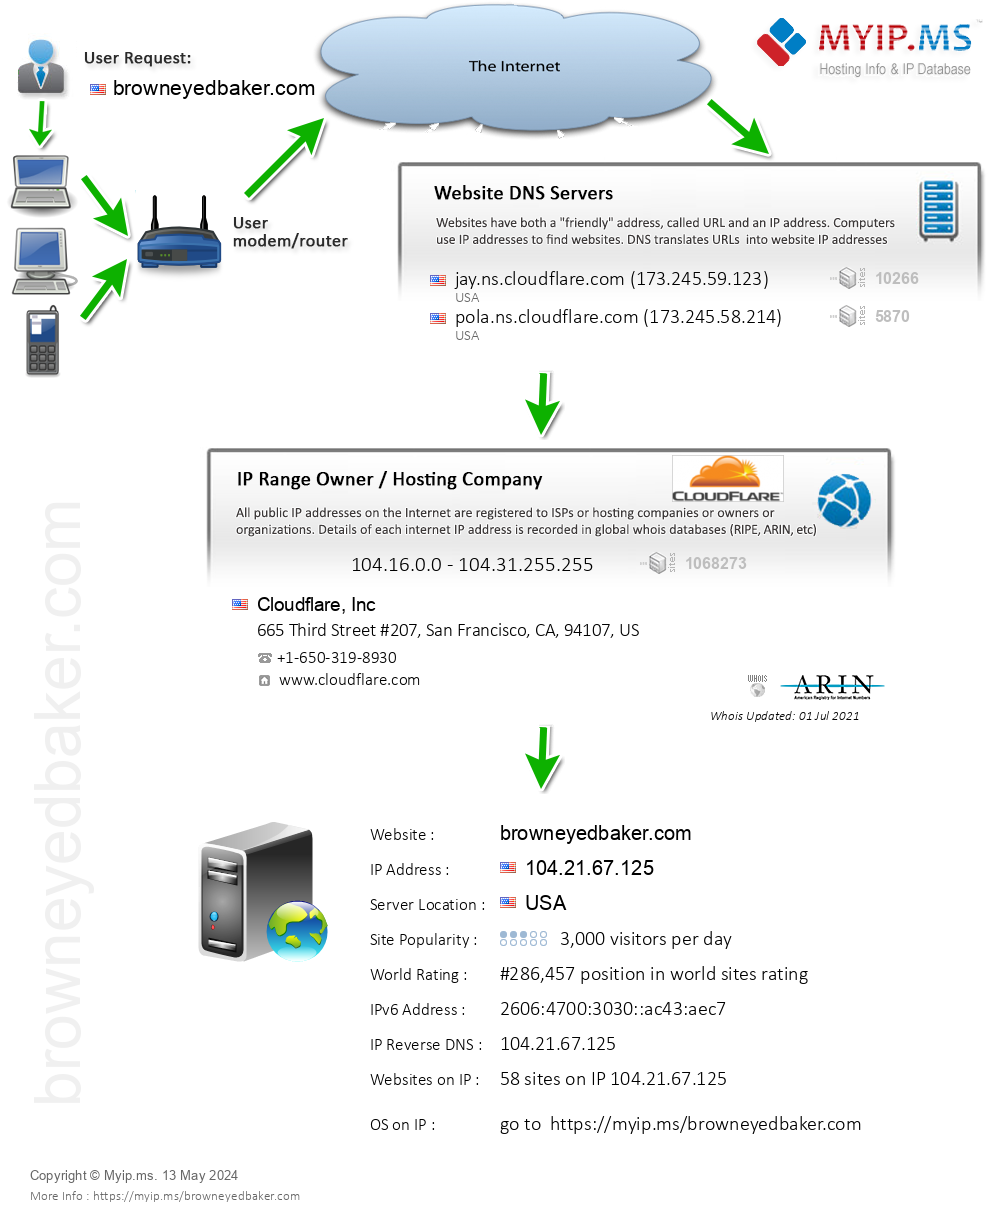 Browneyedbaker.com - Website Hosting Visual IP Diagram